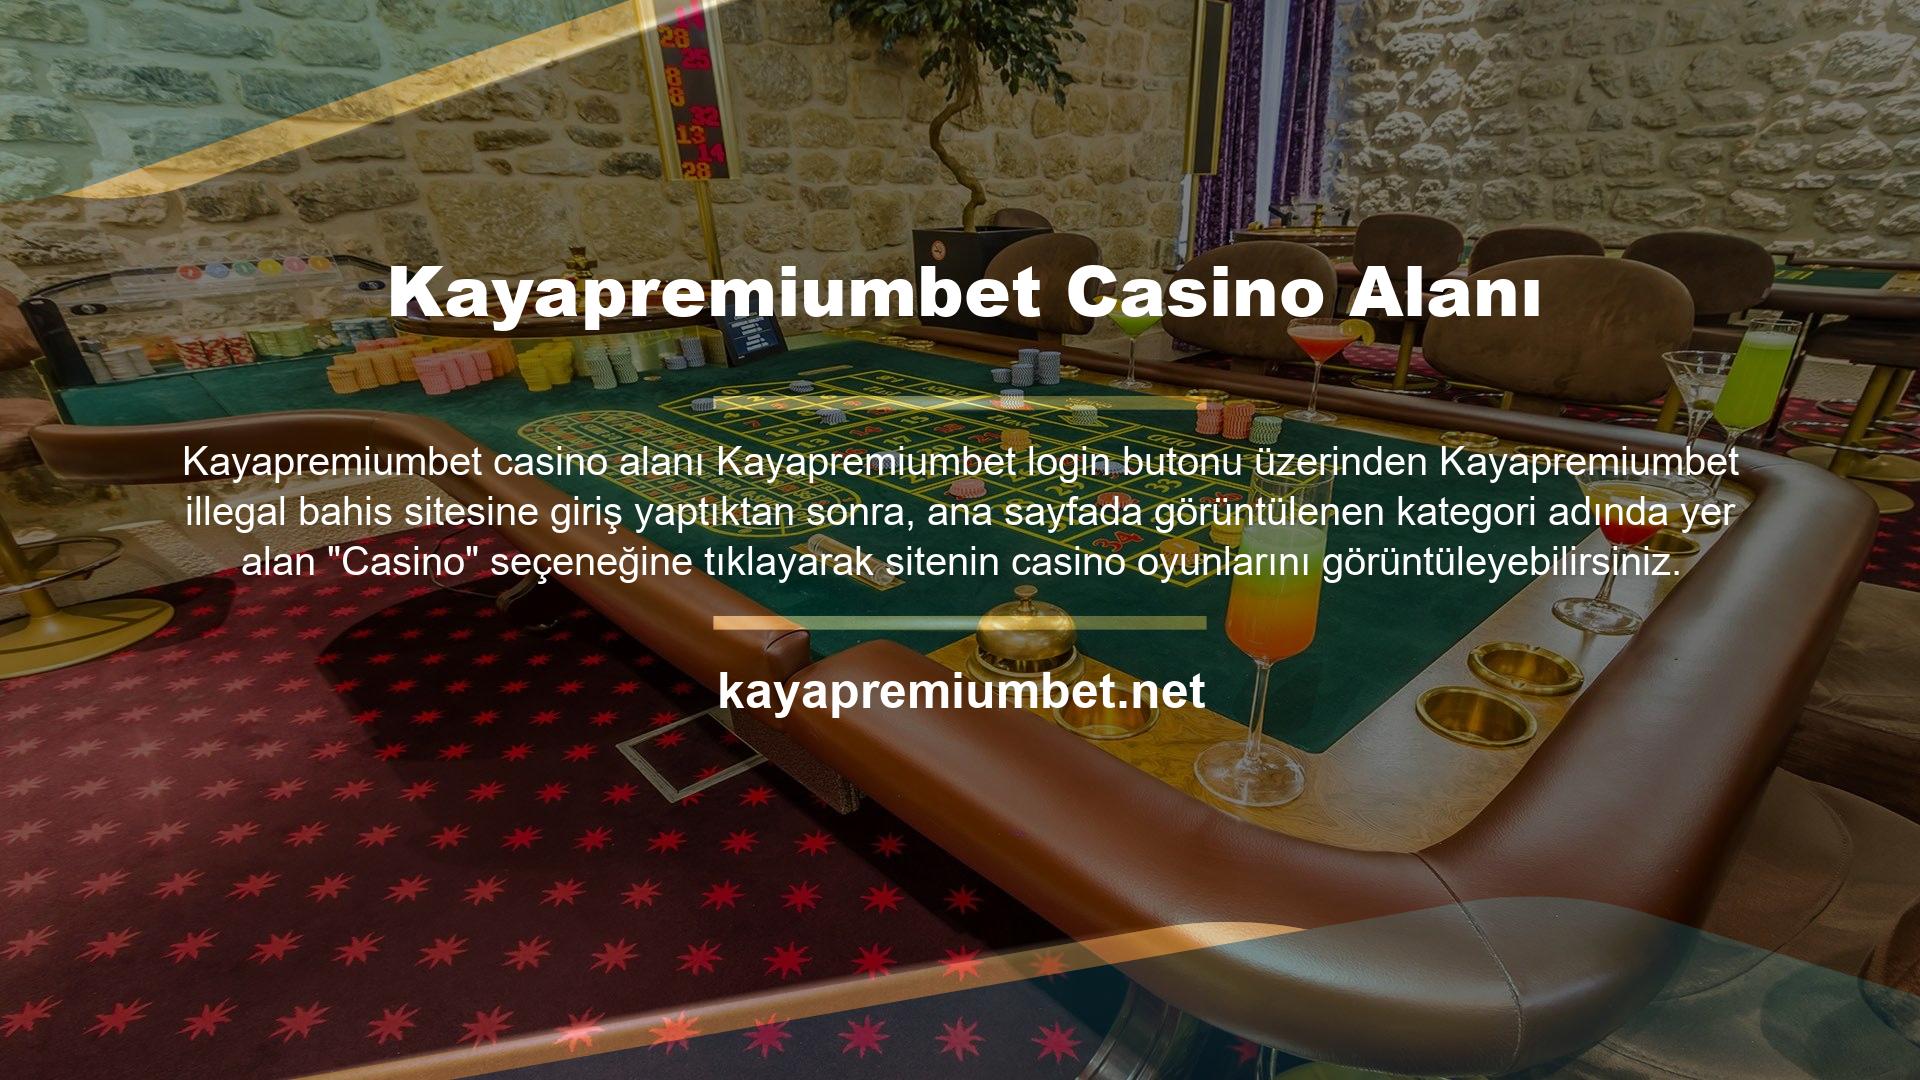 Sitenin casino sayfasının üst kısmında yer alan başlık bölümünde ayrıca casino bölümünde sunulan bonus kampanyalarının yanı sıra yeni eklenen slot oyunları ve diğer casino oyunları ile ilgili duyurular yer almaktadır